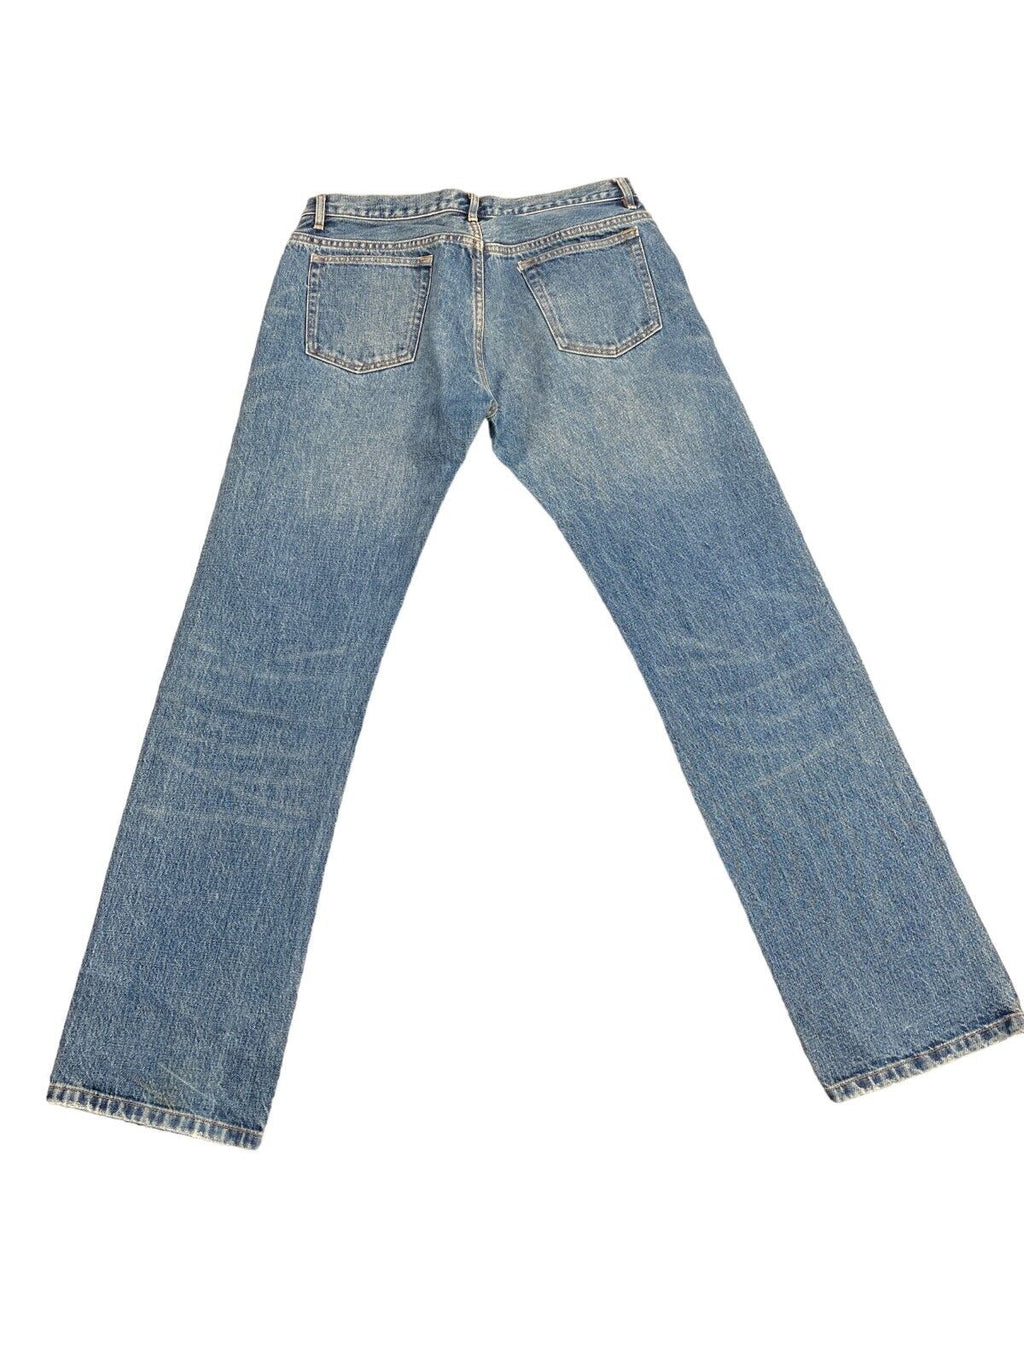 Hipster Denim Jeans